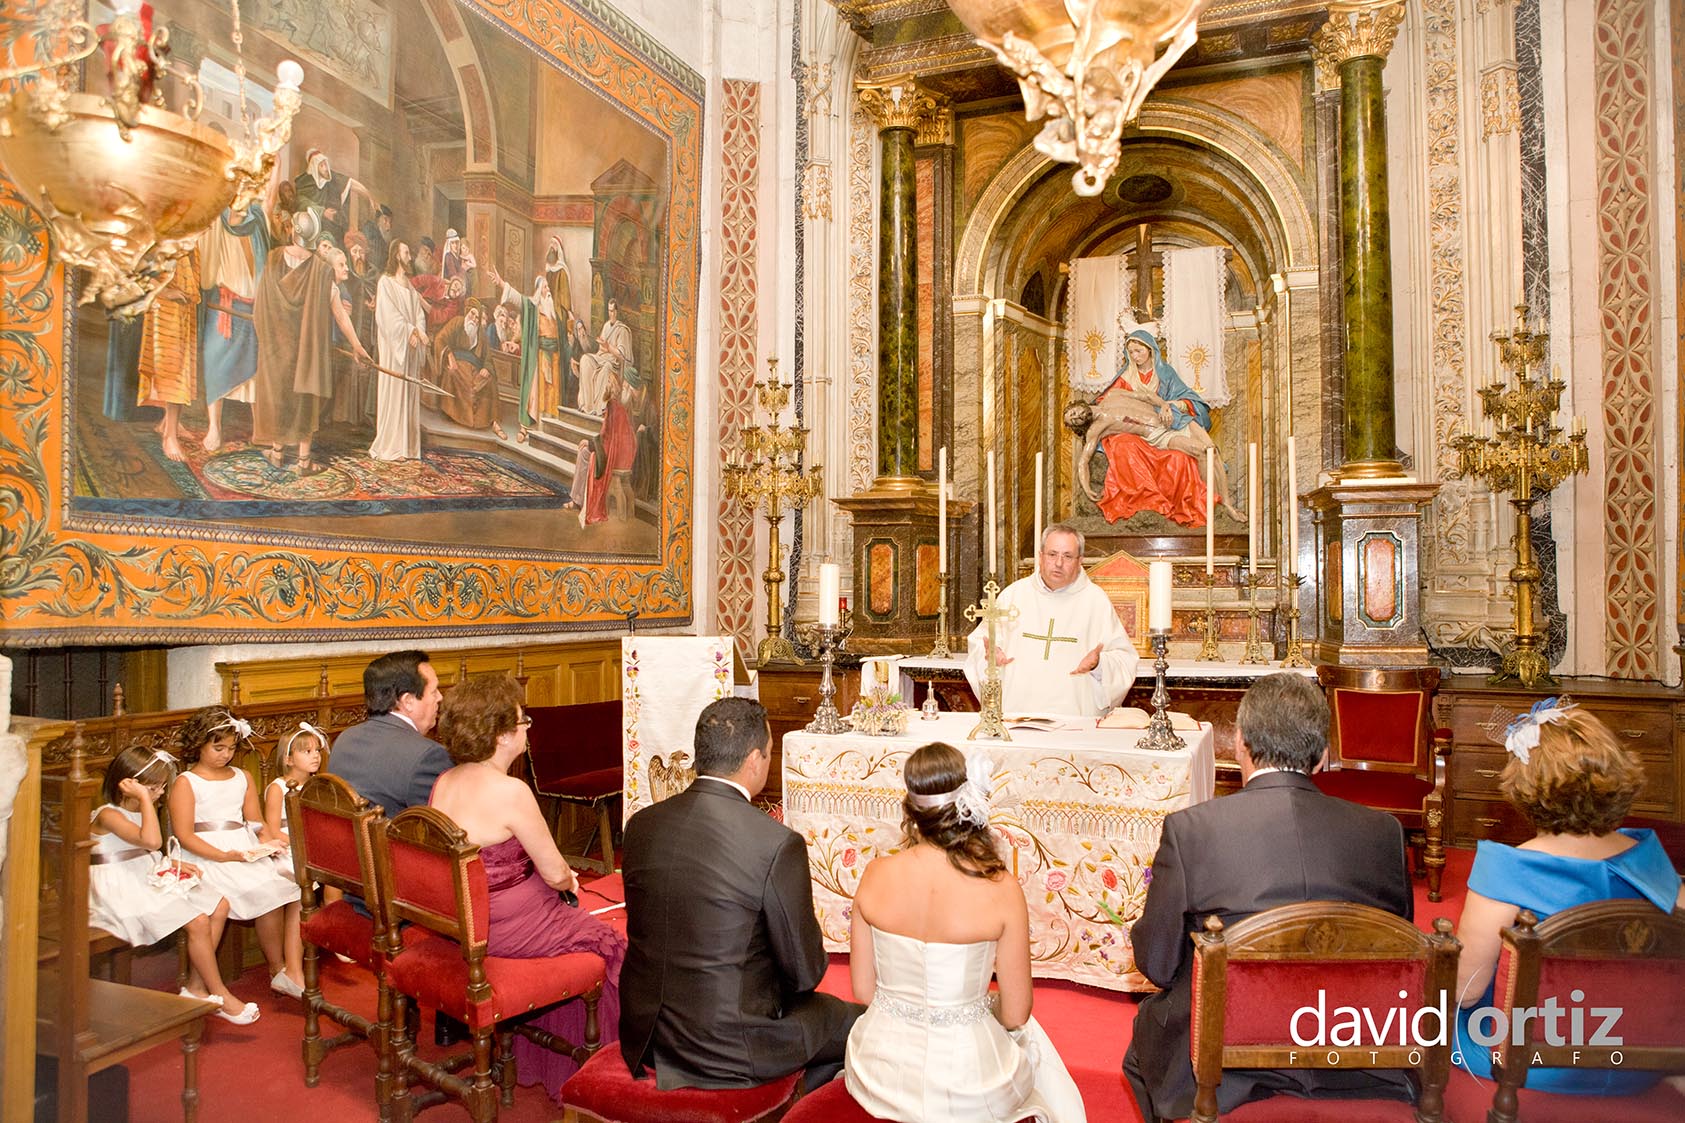 Fotografía y reportaje de la boda de Isarel y Eva, realizado por David Ortiz Fotógrafo en Salamanca